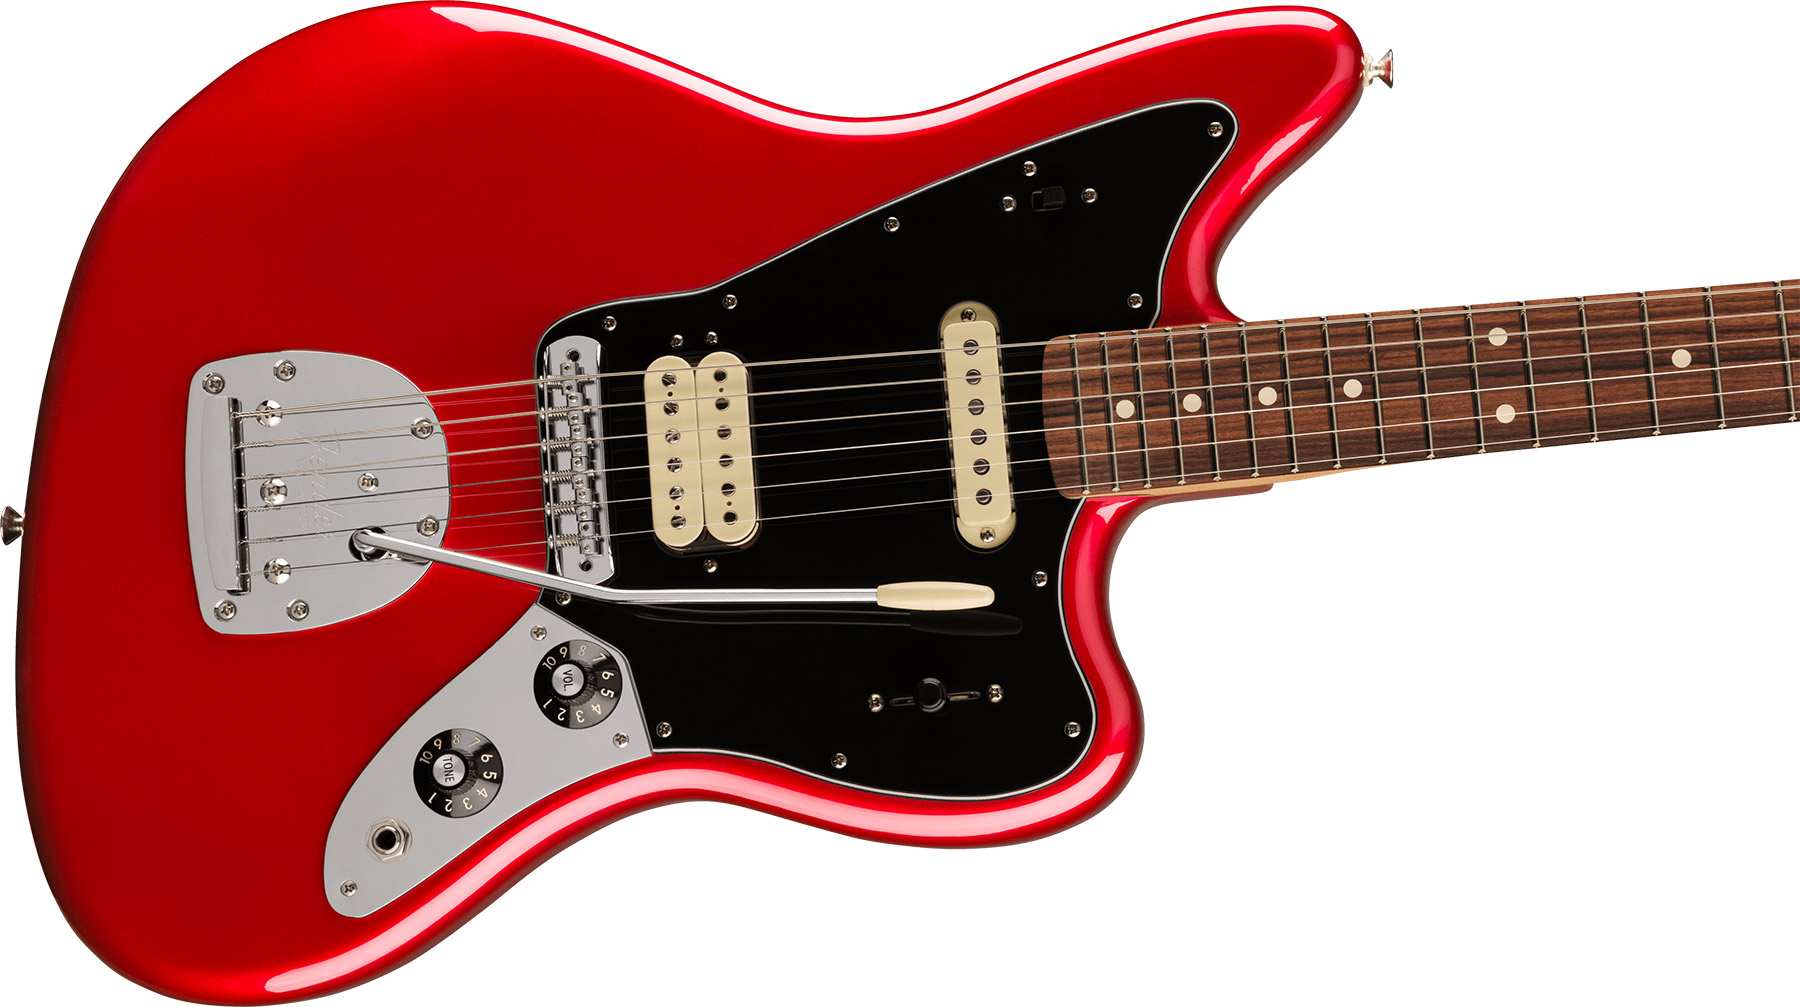 Fender Jaguar Player Mex 2023 Hs Trem Pf - Candy Apple Red - Retro-Rock-E-Gitarre - Variation 2